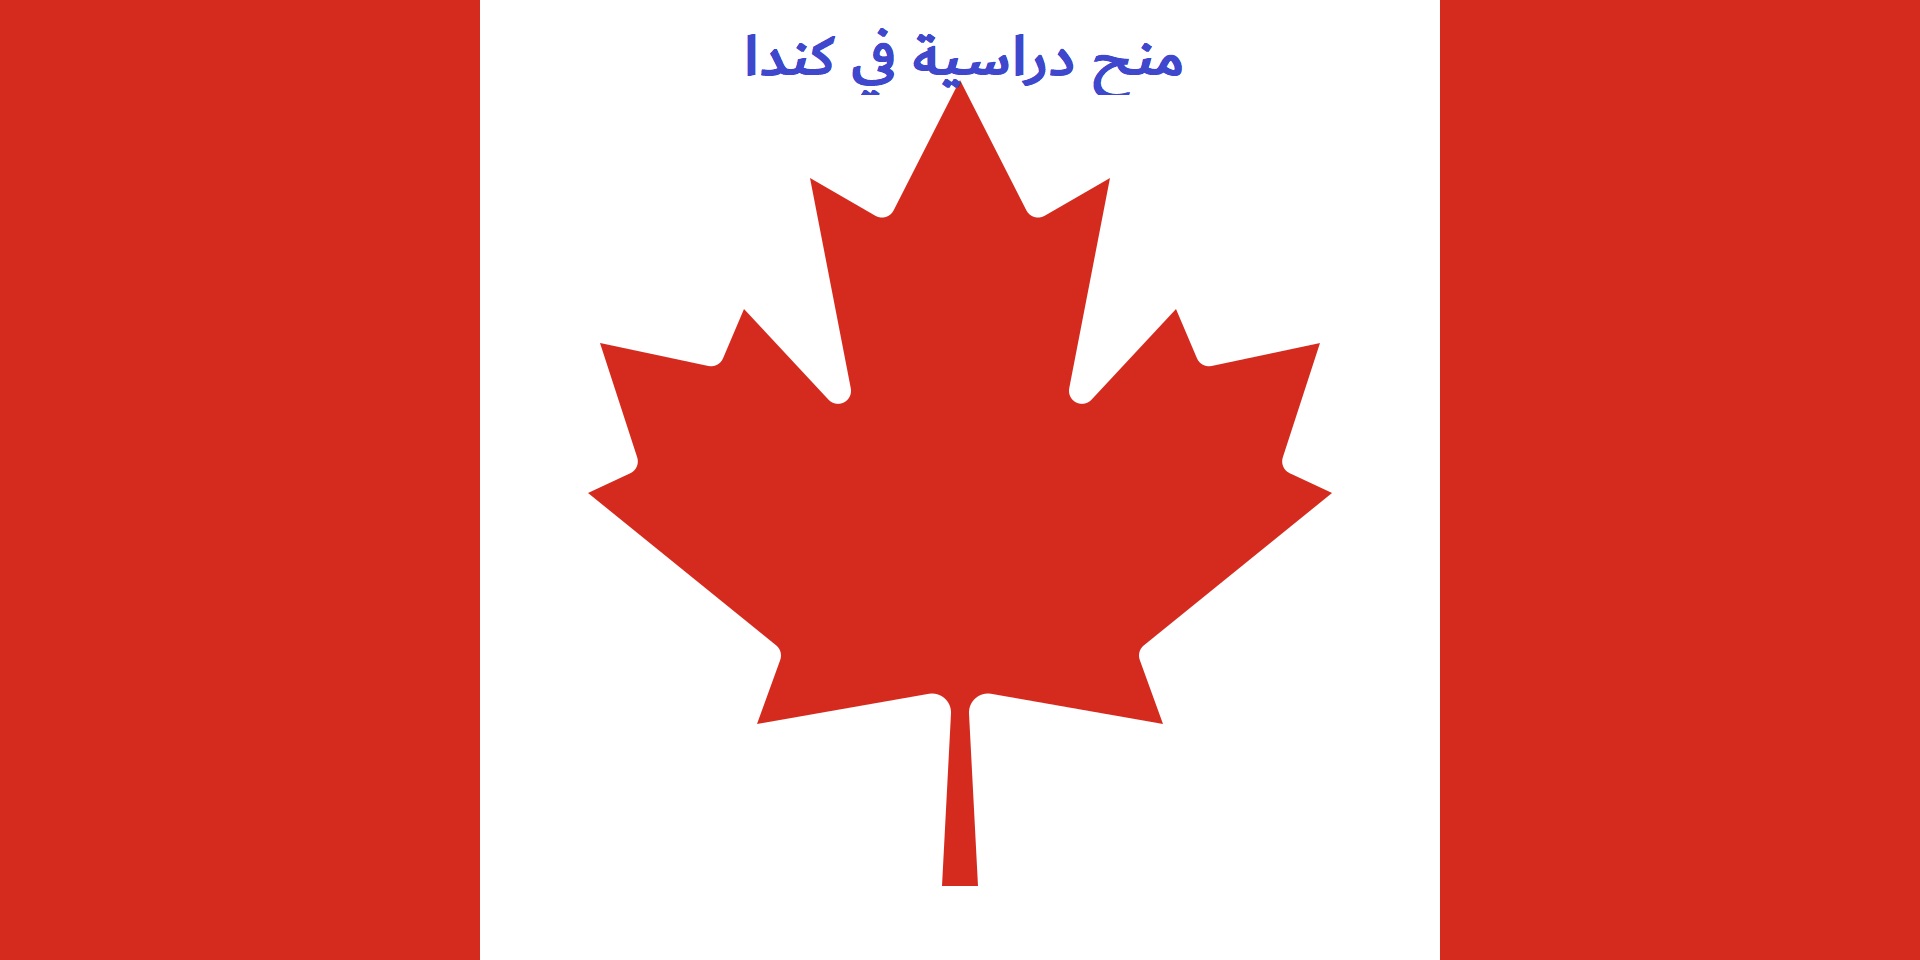 كندا: منحة مقاطعة كيبيك ممولة بالكامل في الدكتوراه والزمالات والبحث والماجستير